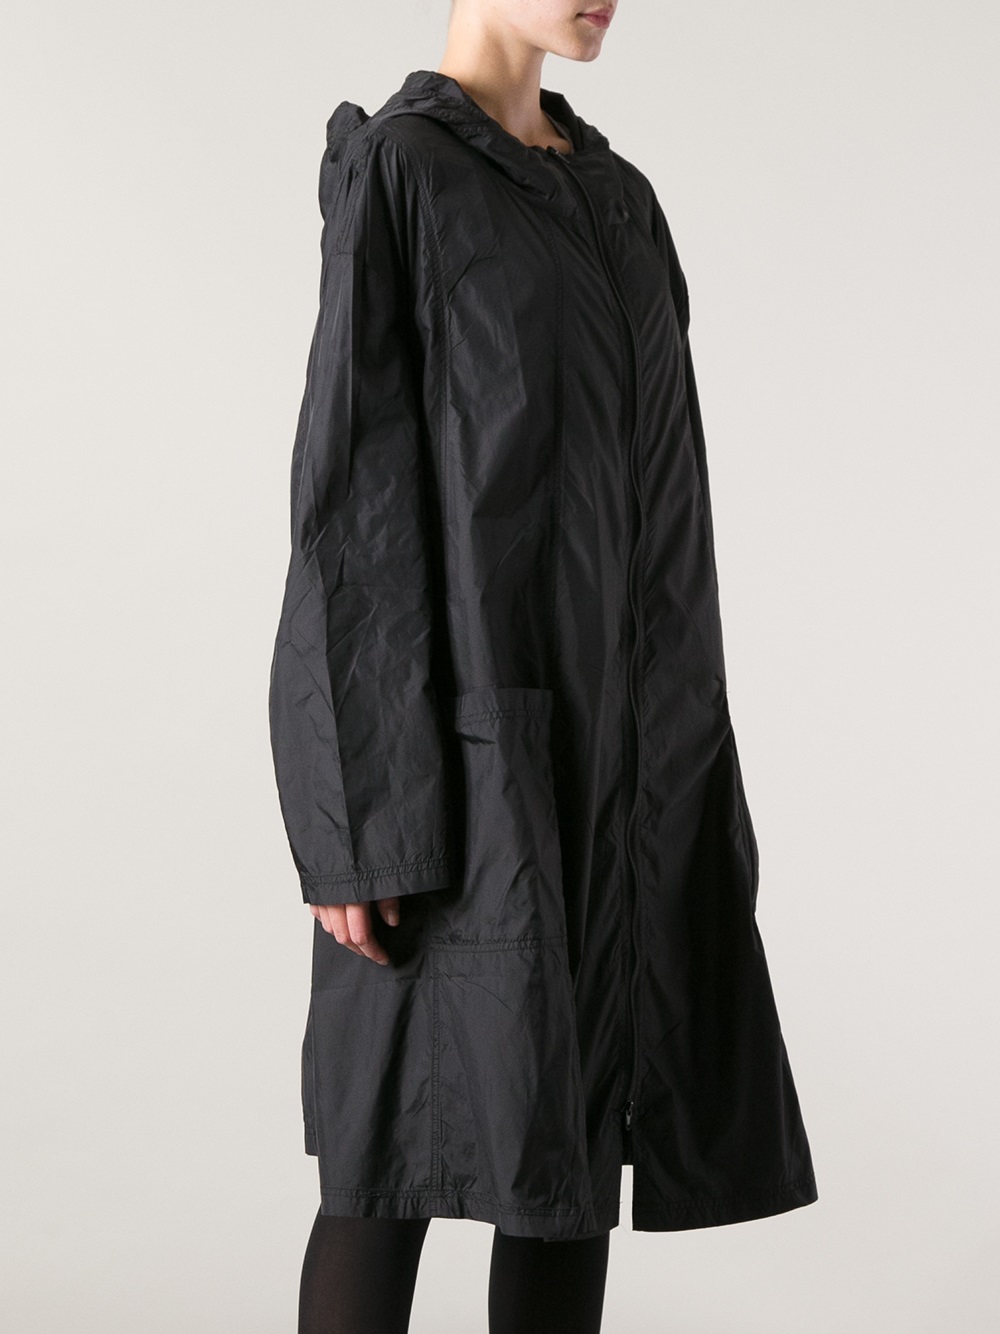 Long Black Rain Coat - Coat Nj